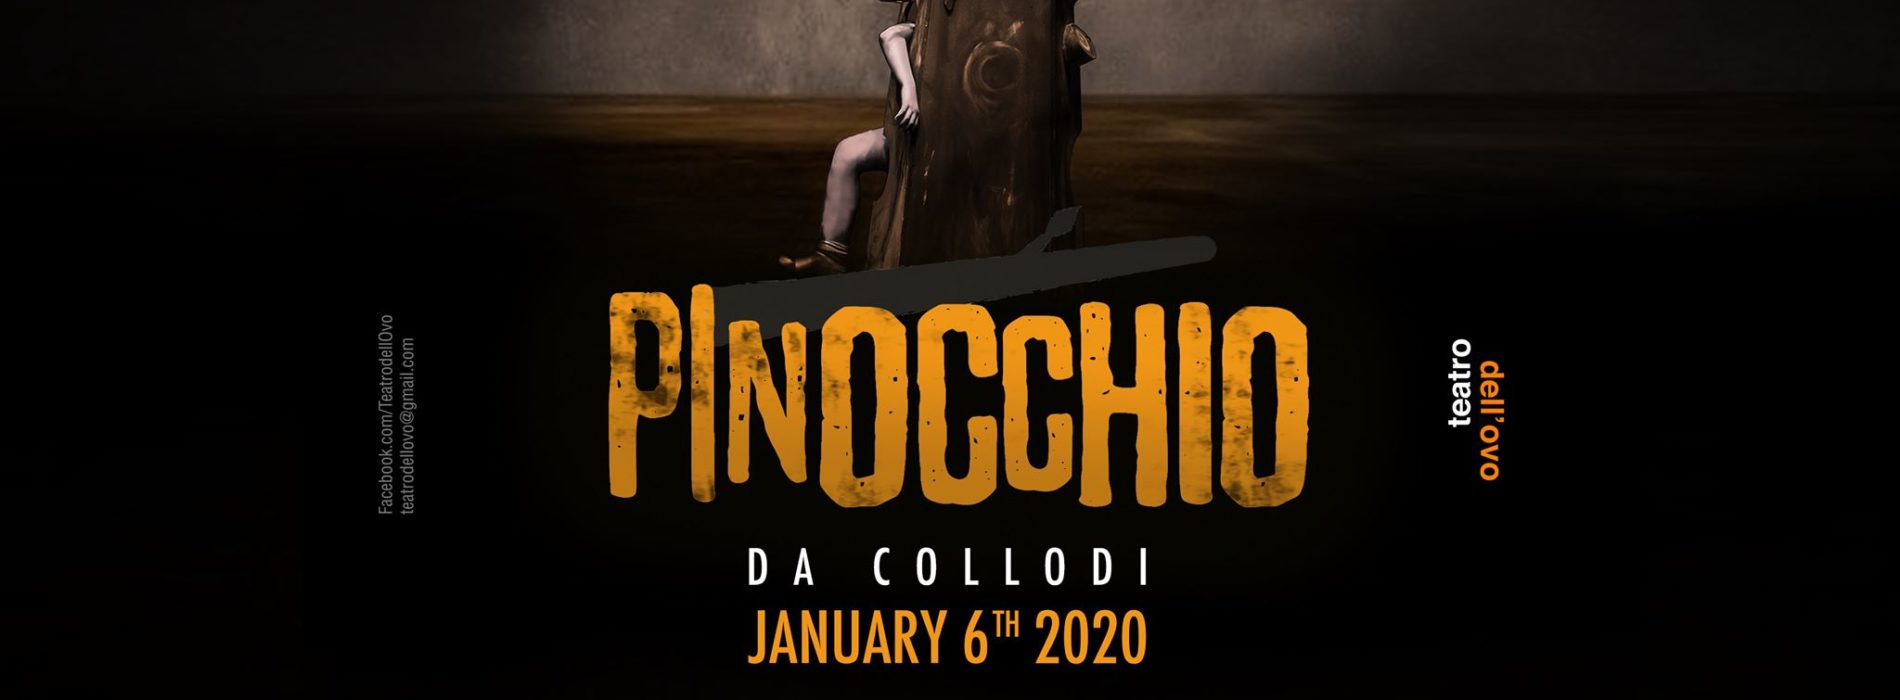 Pinocchio al Teatro Izzo, omaggio al burattino che piace a tutti